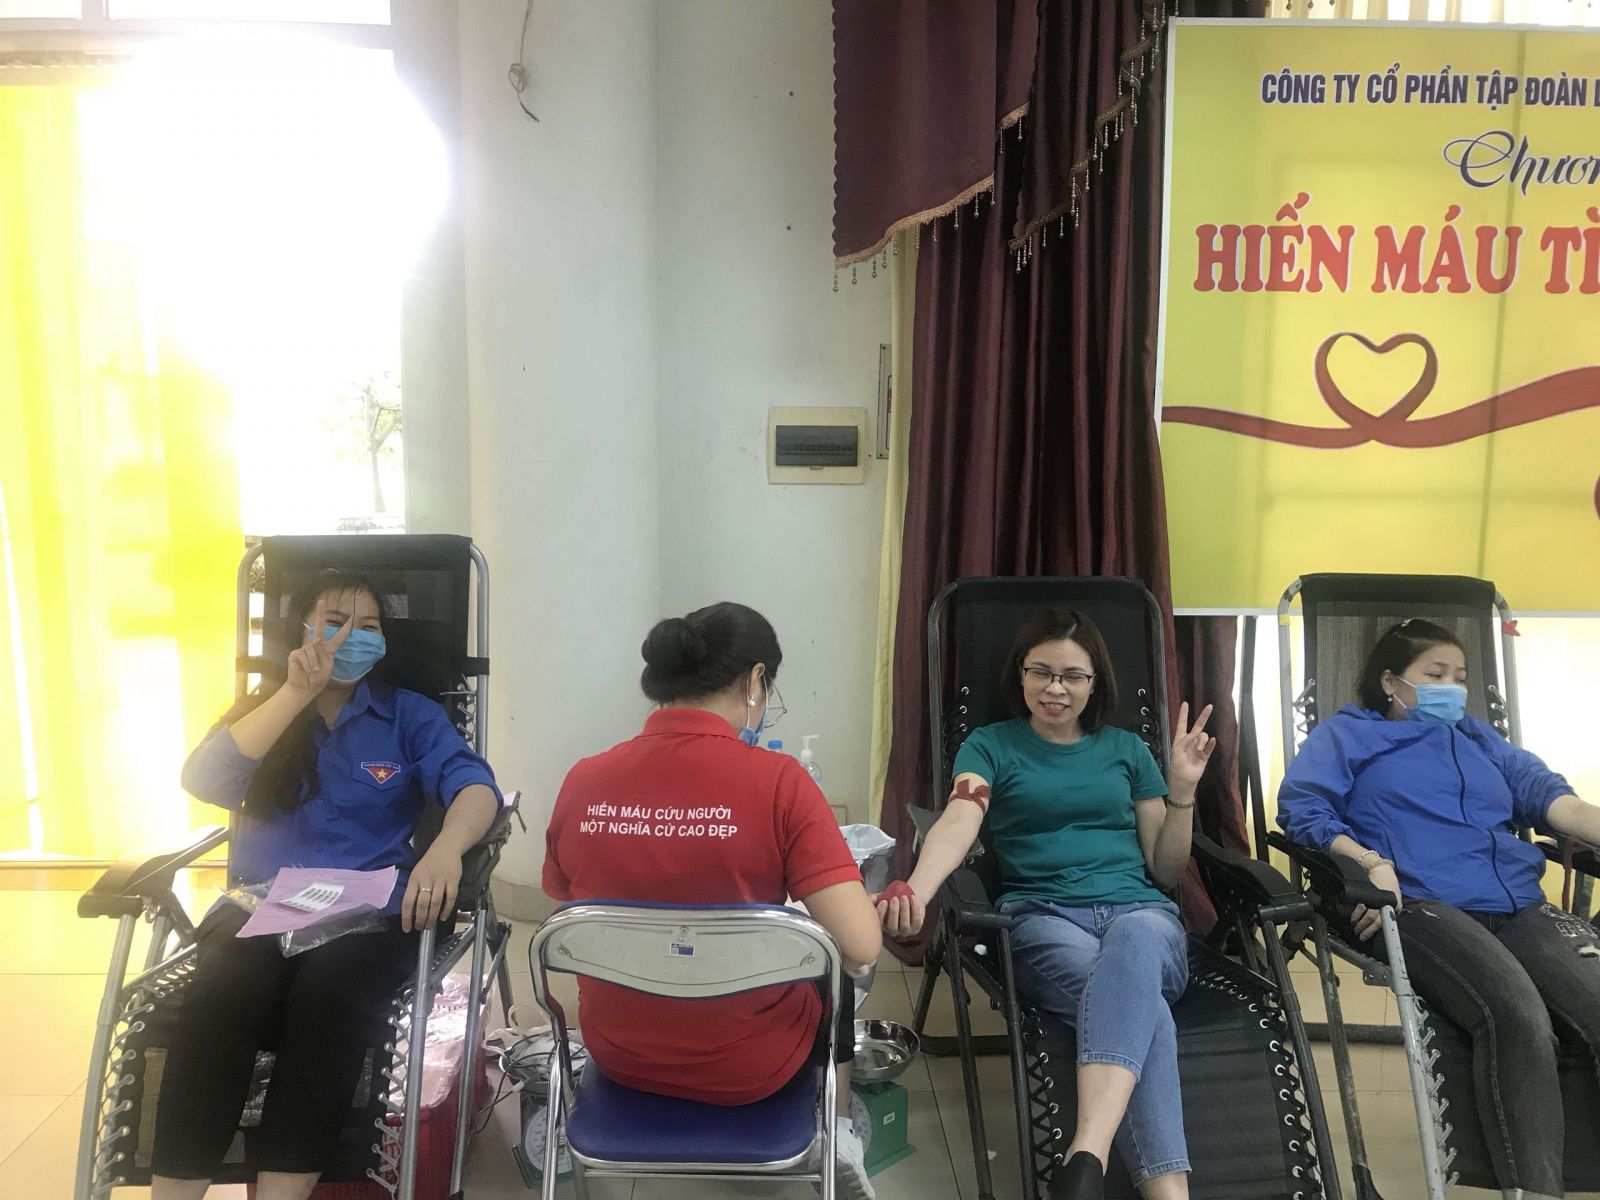 Đồng chí Nguyễn Thị Minh – Chủ tịch Công đoàn;  Nguyễn Thị Kiều Oanh tham gia hiến máu